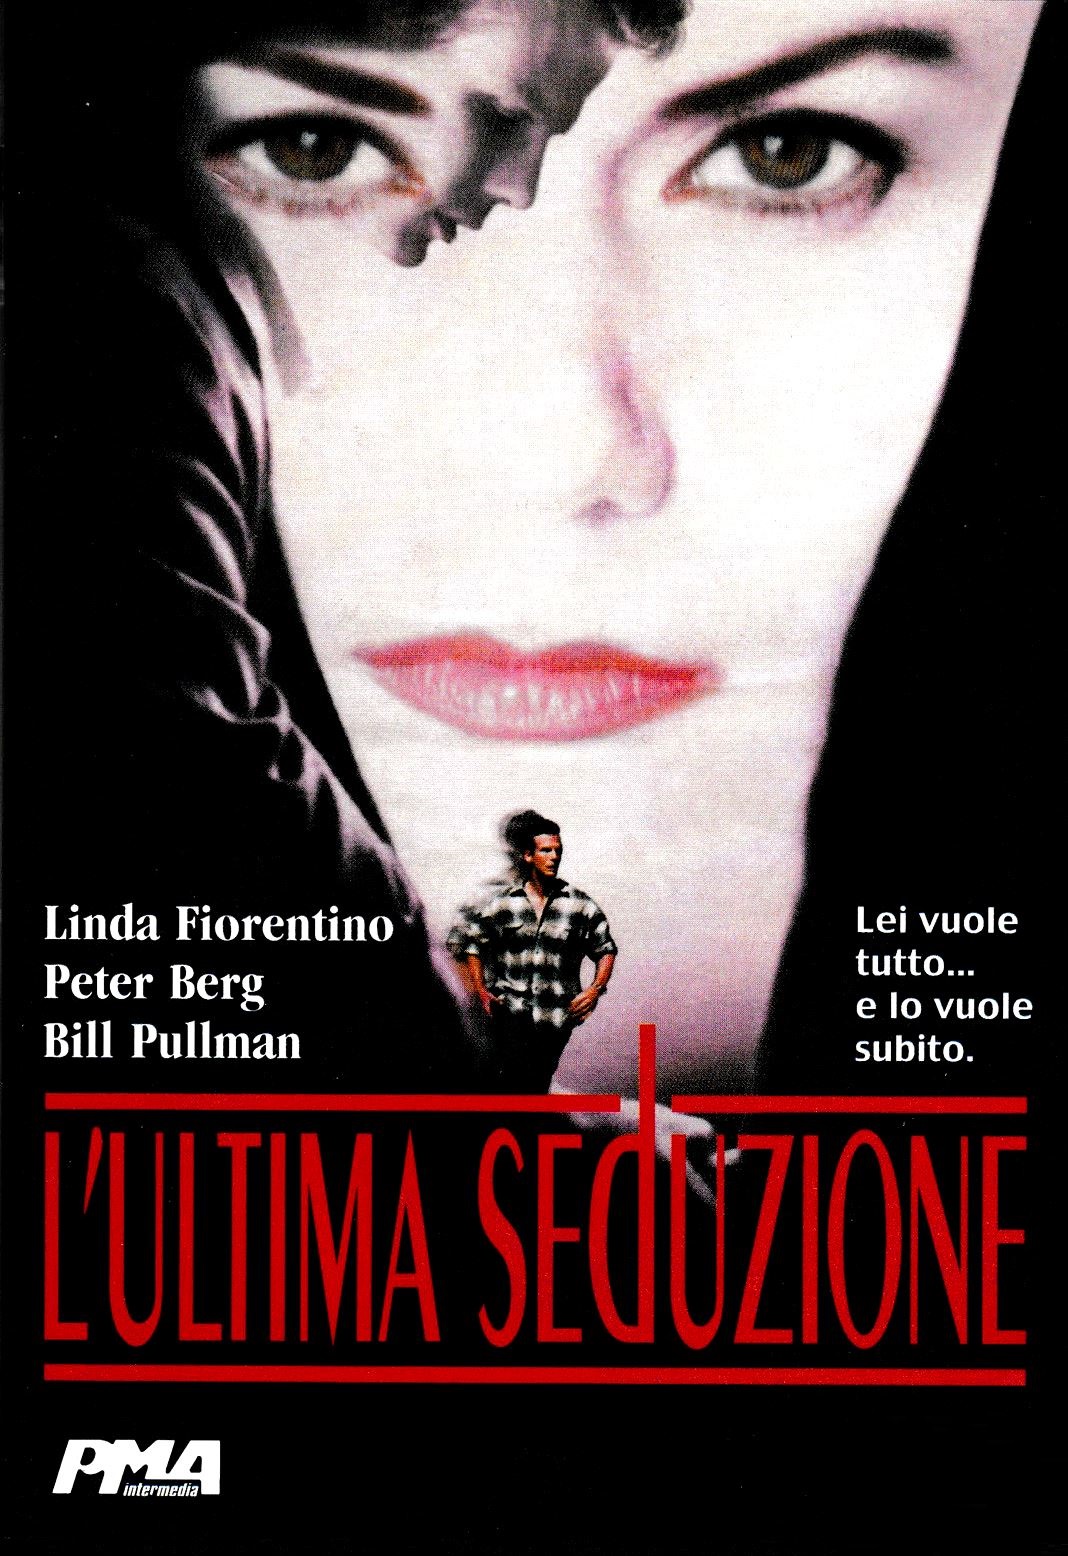 L’ultima seduzione (1994)